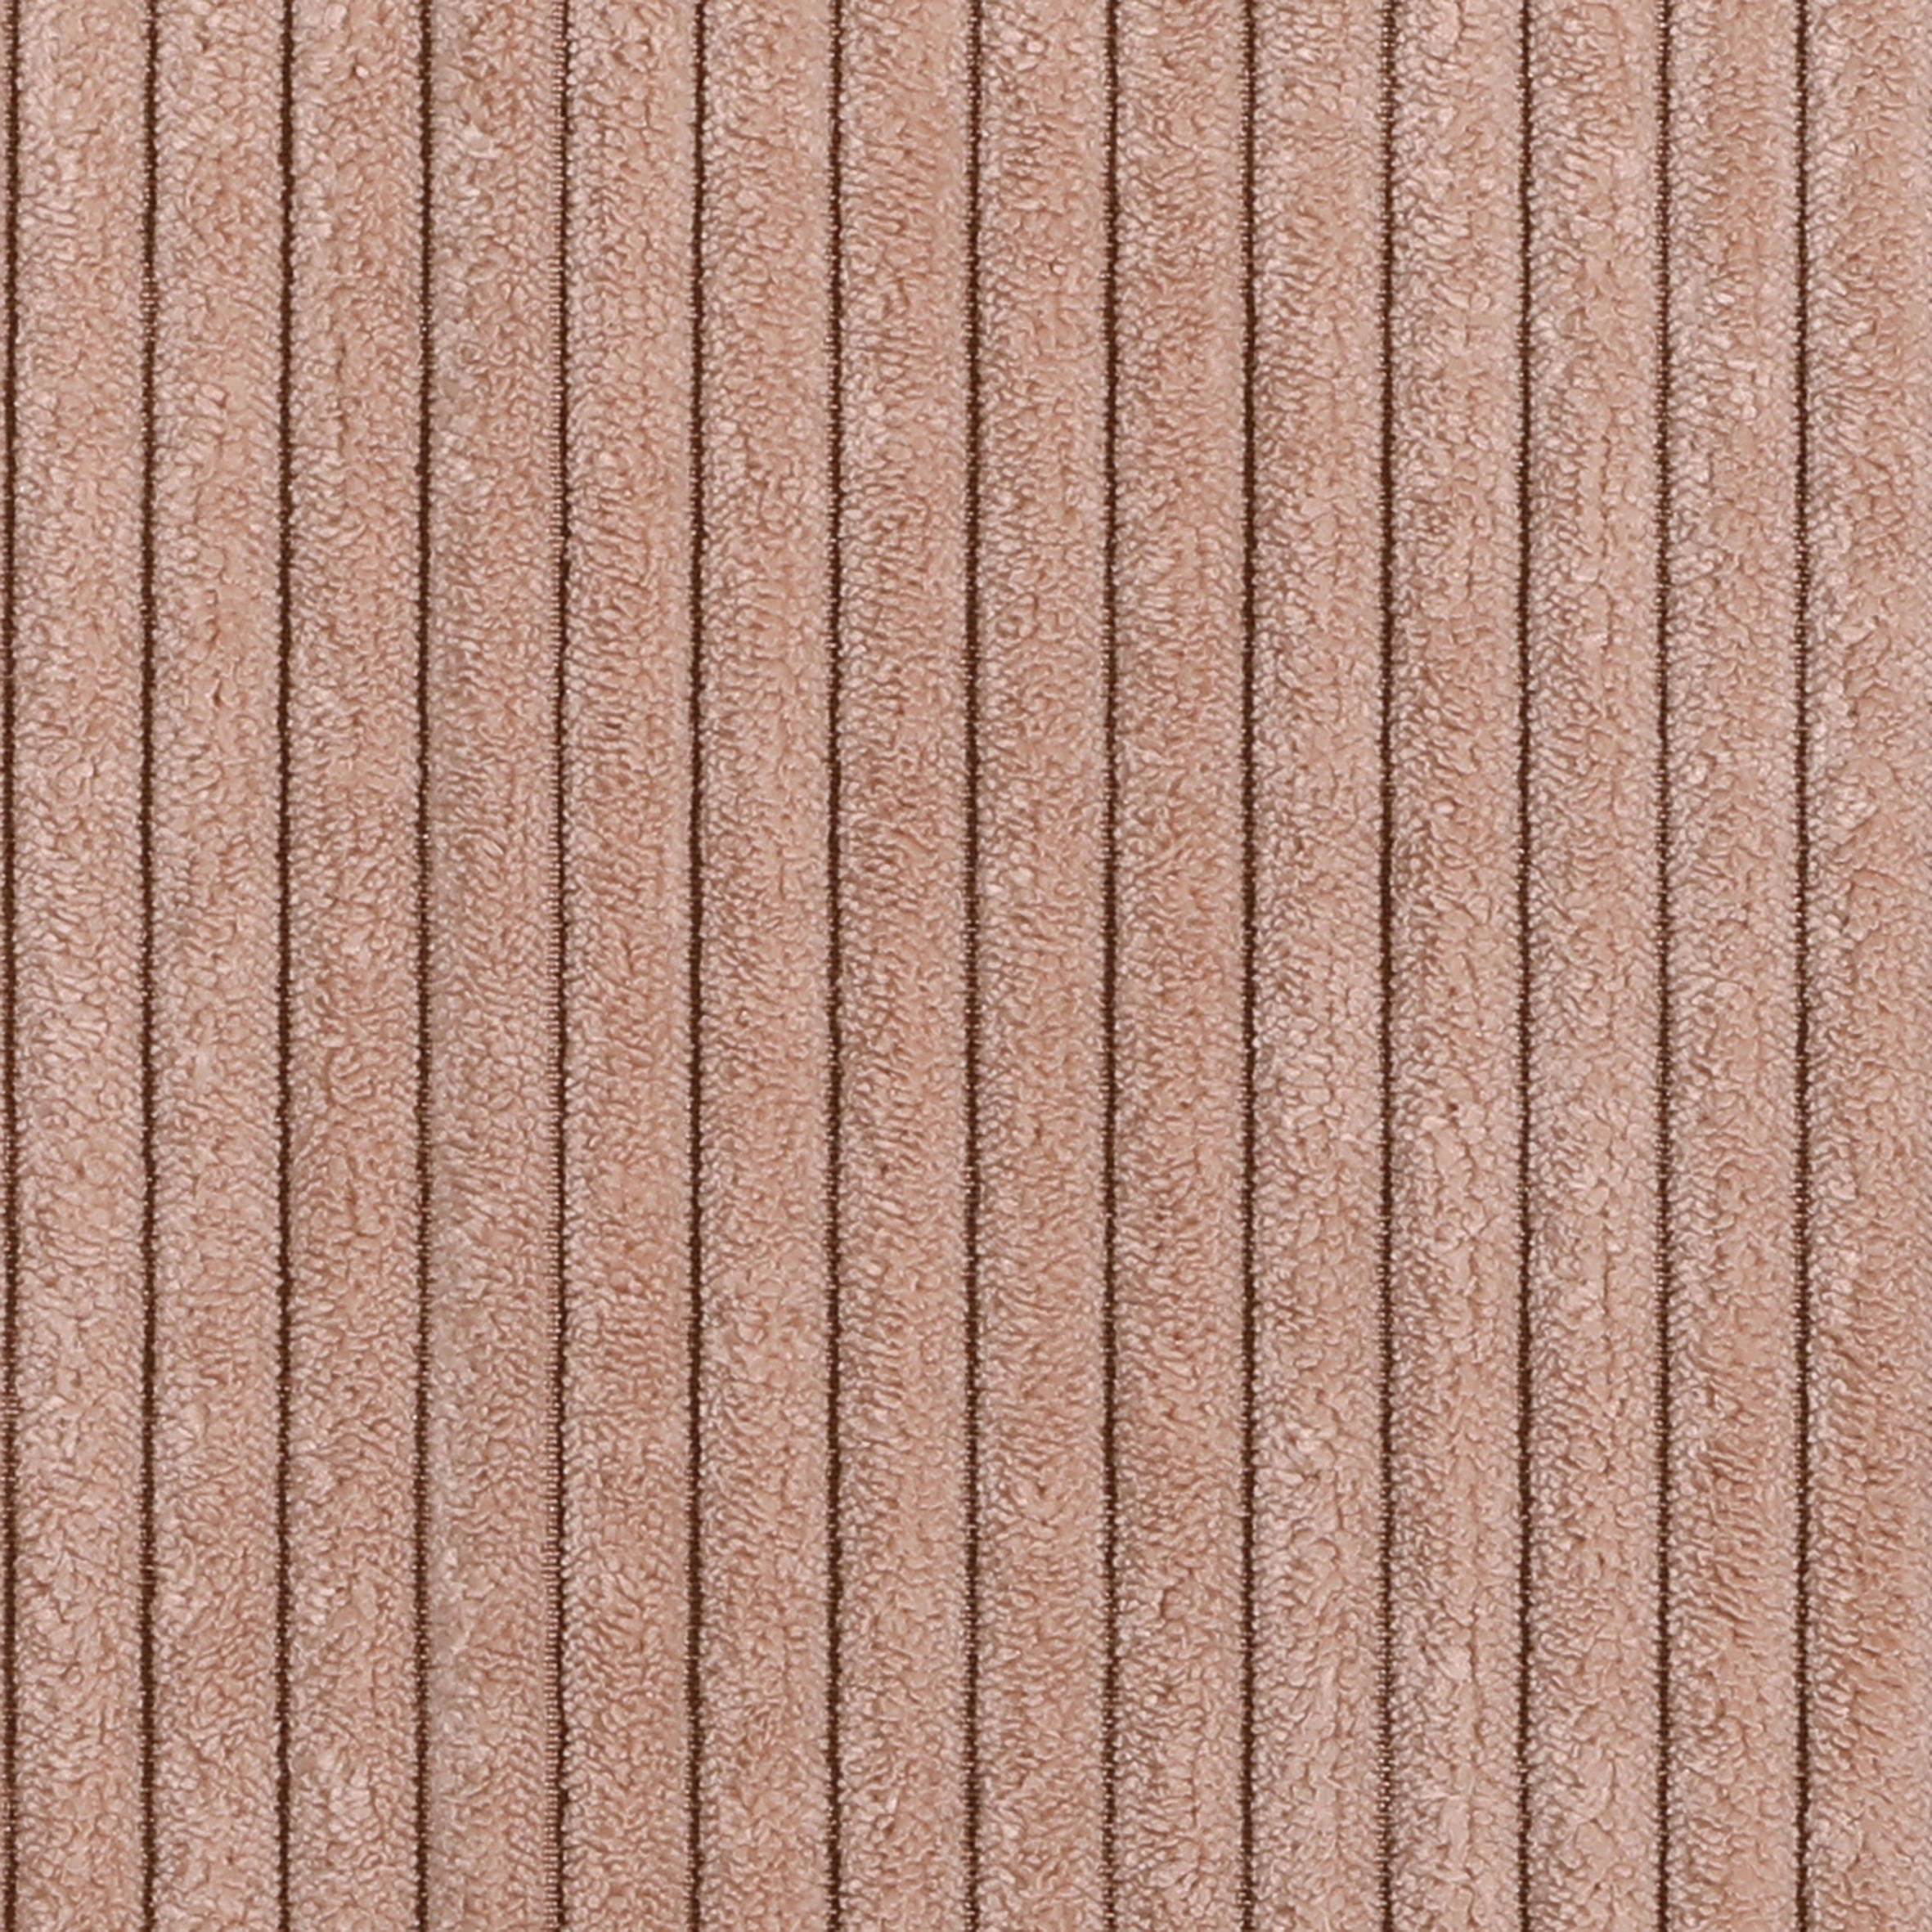 HOCKER Cord Altrosa  - Eichefarben/Altrosa, LIFESTYLE, Holz/Textil (100/48/62cm) - Landscape